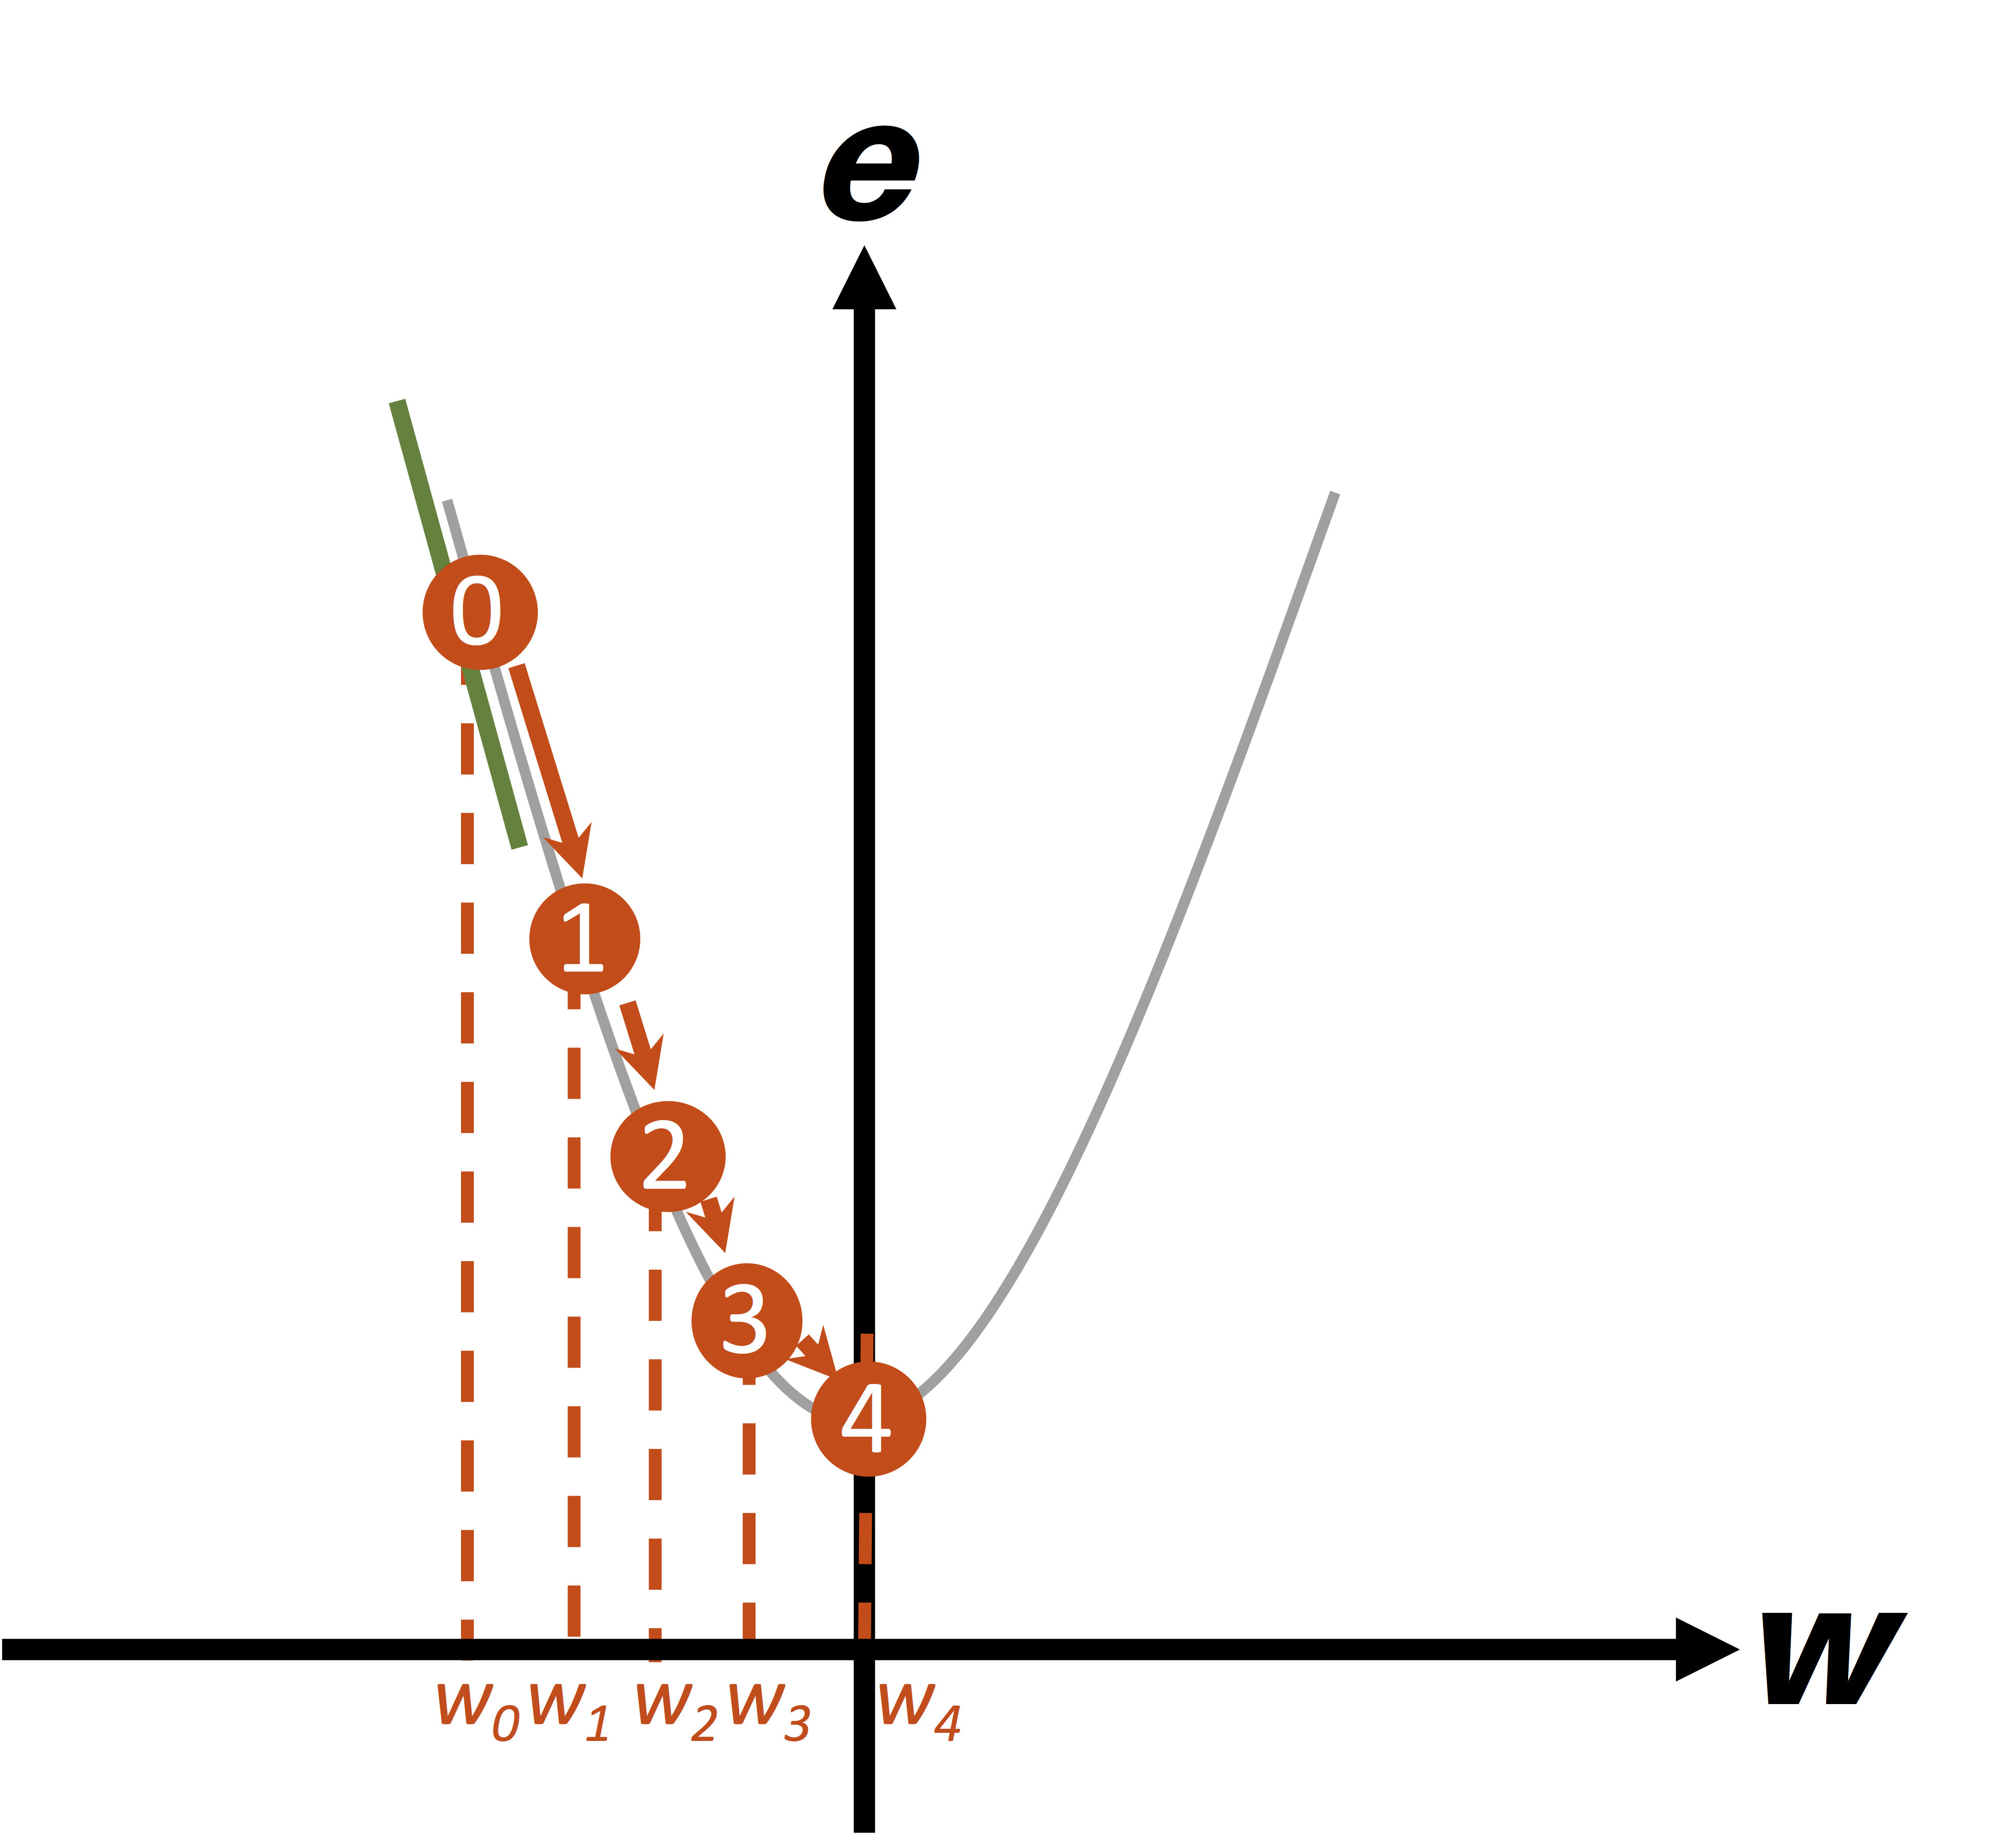 Ejemplo gráfico del gradiente descendente cuando el punto inicial (w) es negativo